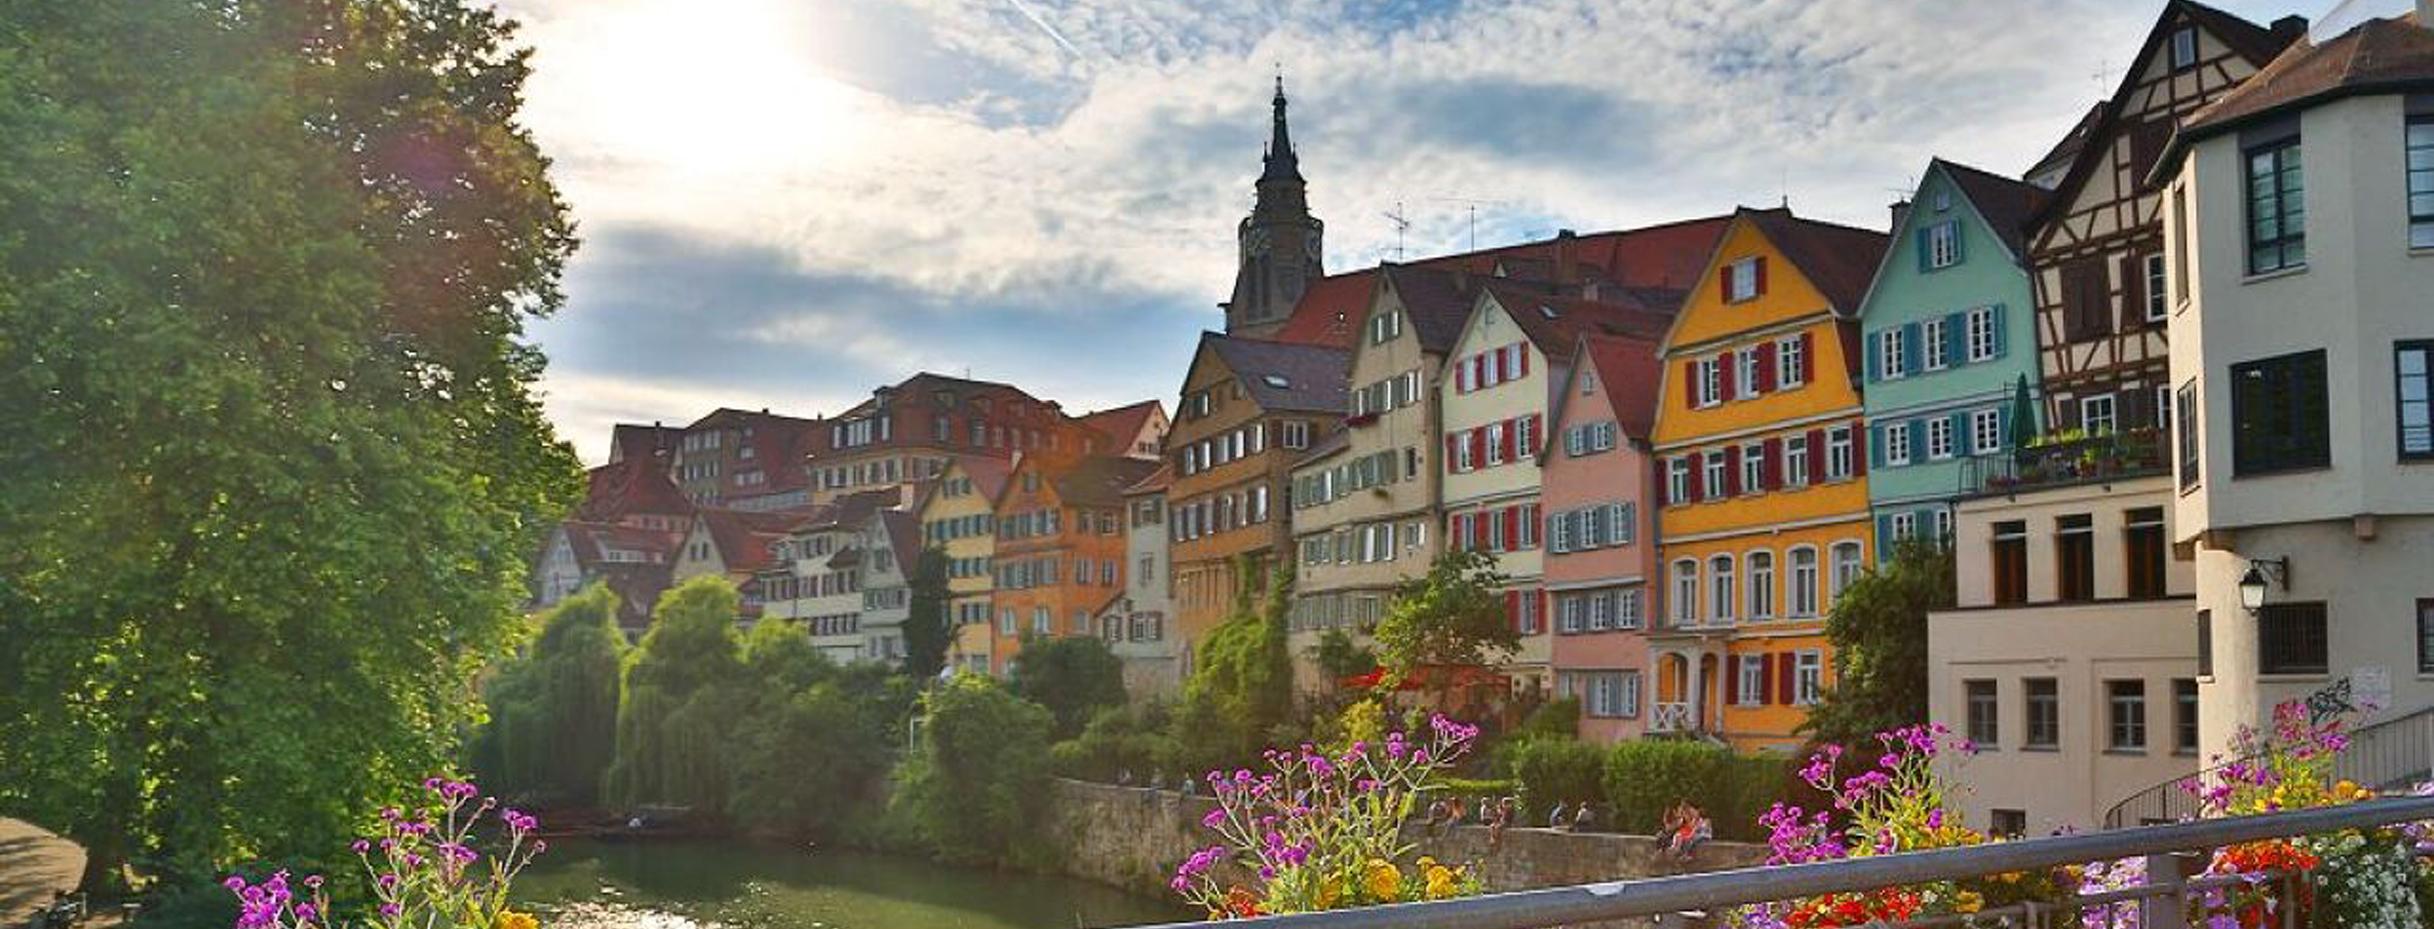 Fachwerkhäuser am Neckar in Tübingen